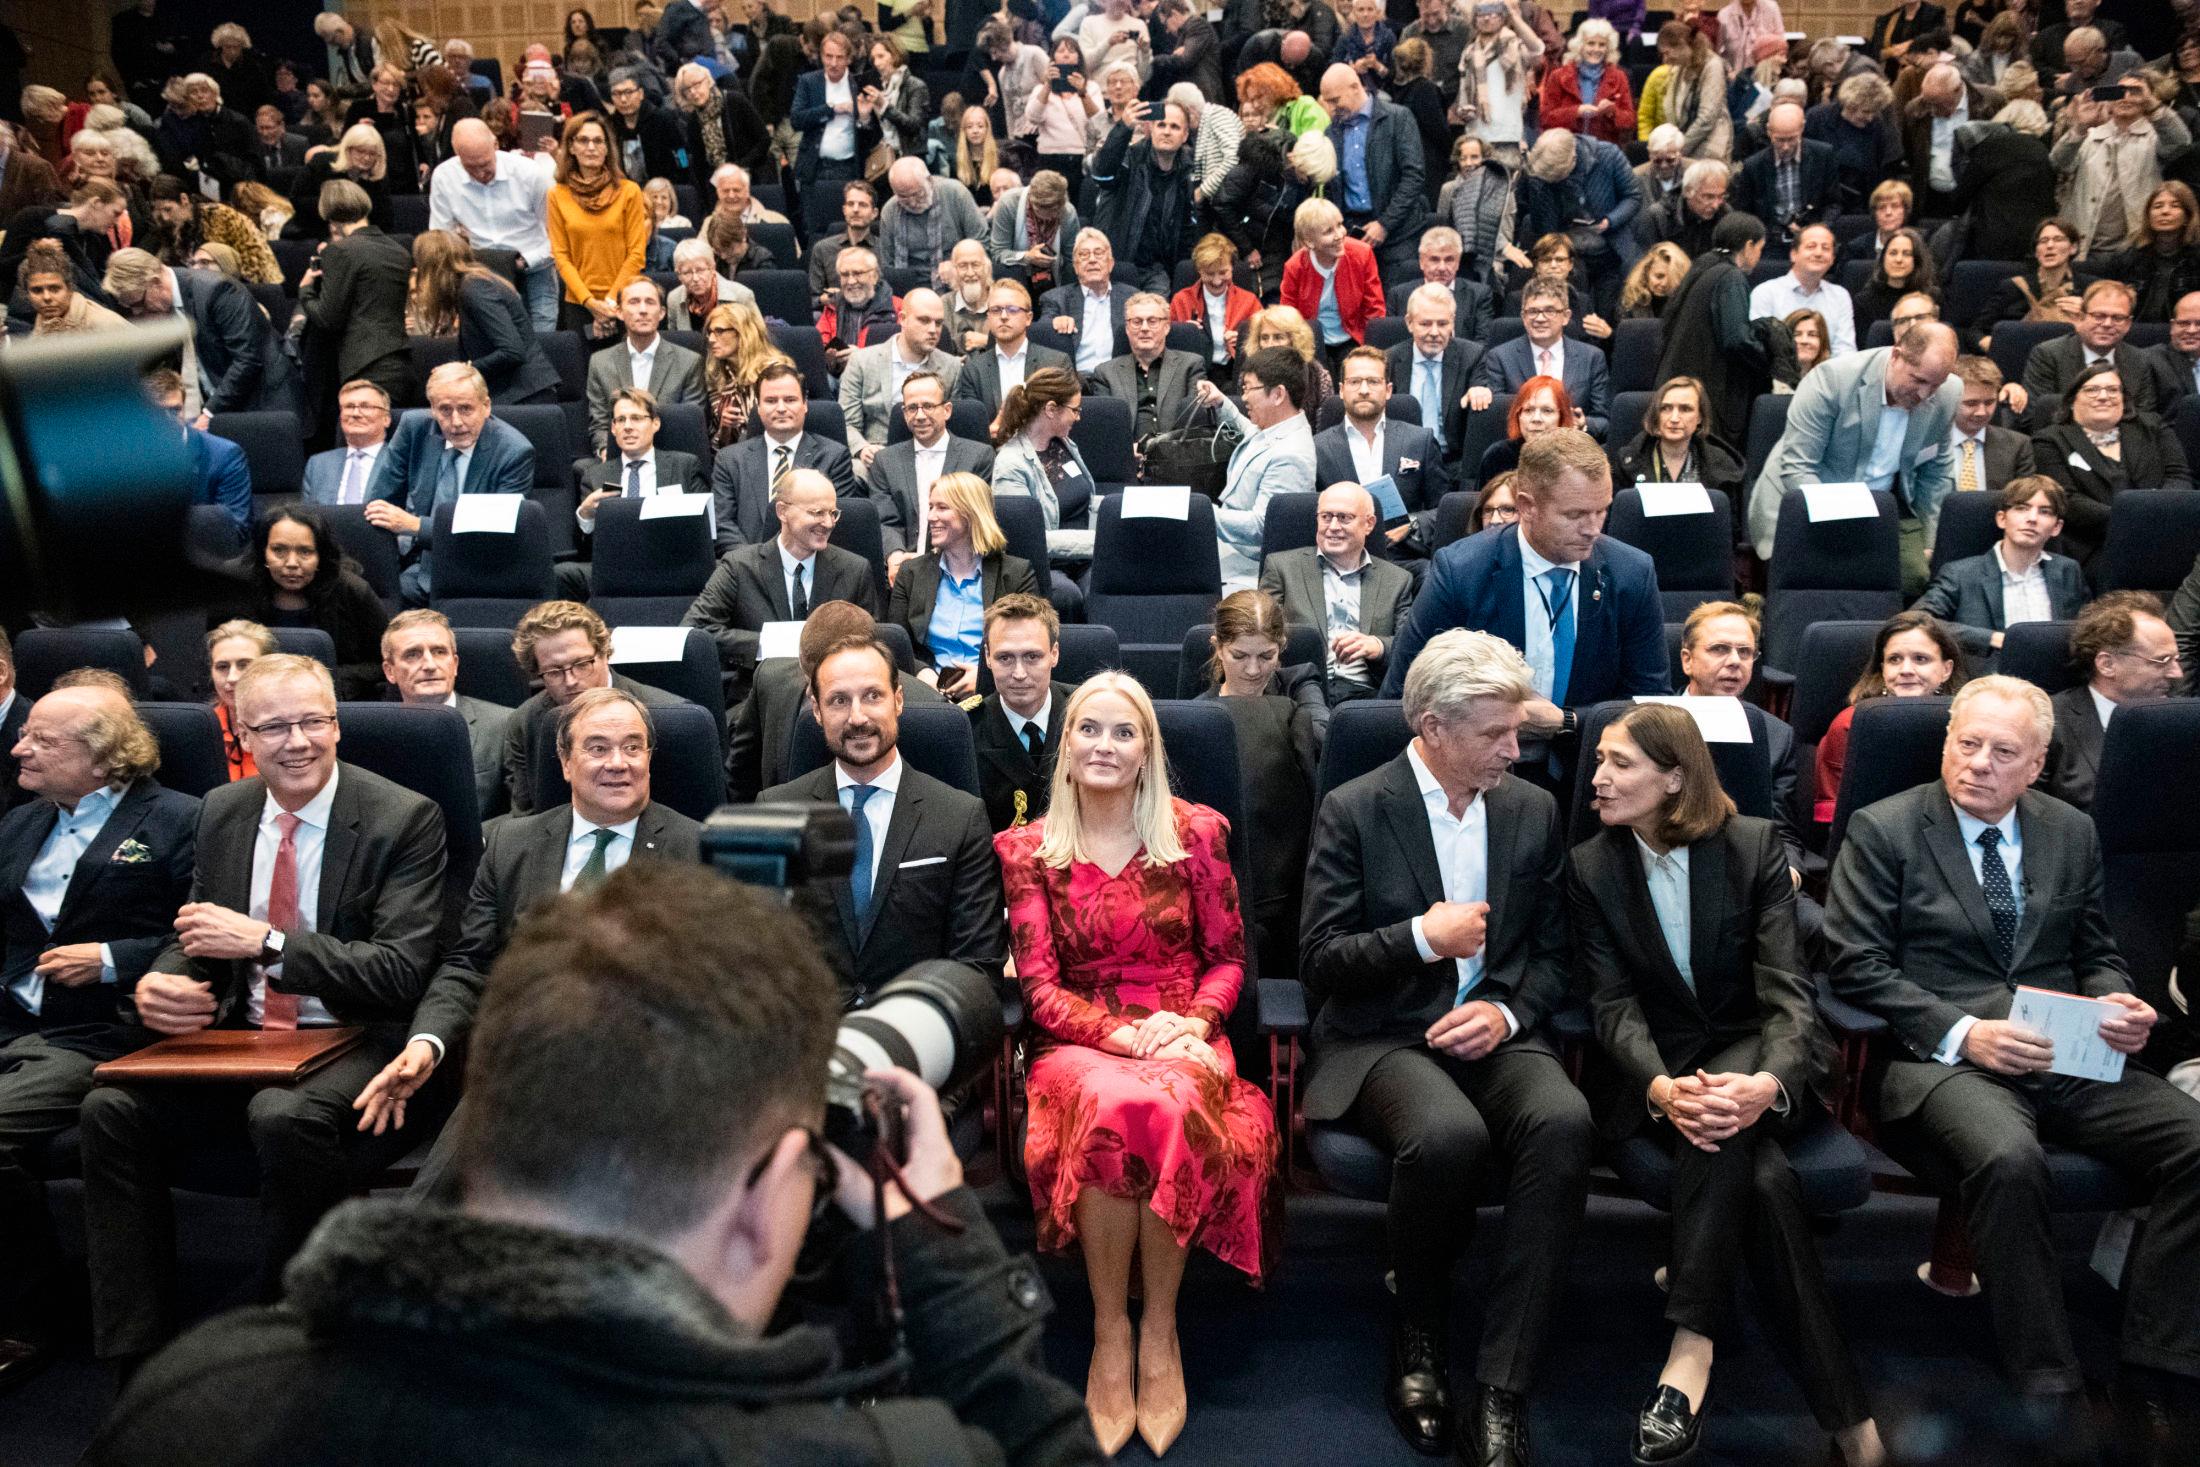 BLIKKFANG: Mette-Marit i rød kjole sammen kronprins Haakon og Karl Ove Knausgård under åpningen av Munch-Knausgård-utstillingen. Foto: Ola Vatn, VG.